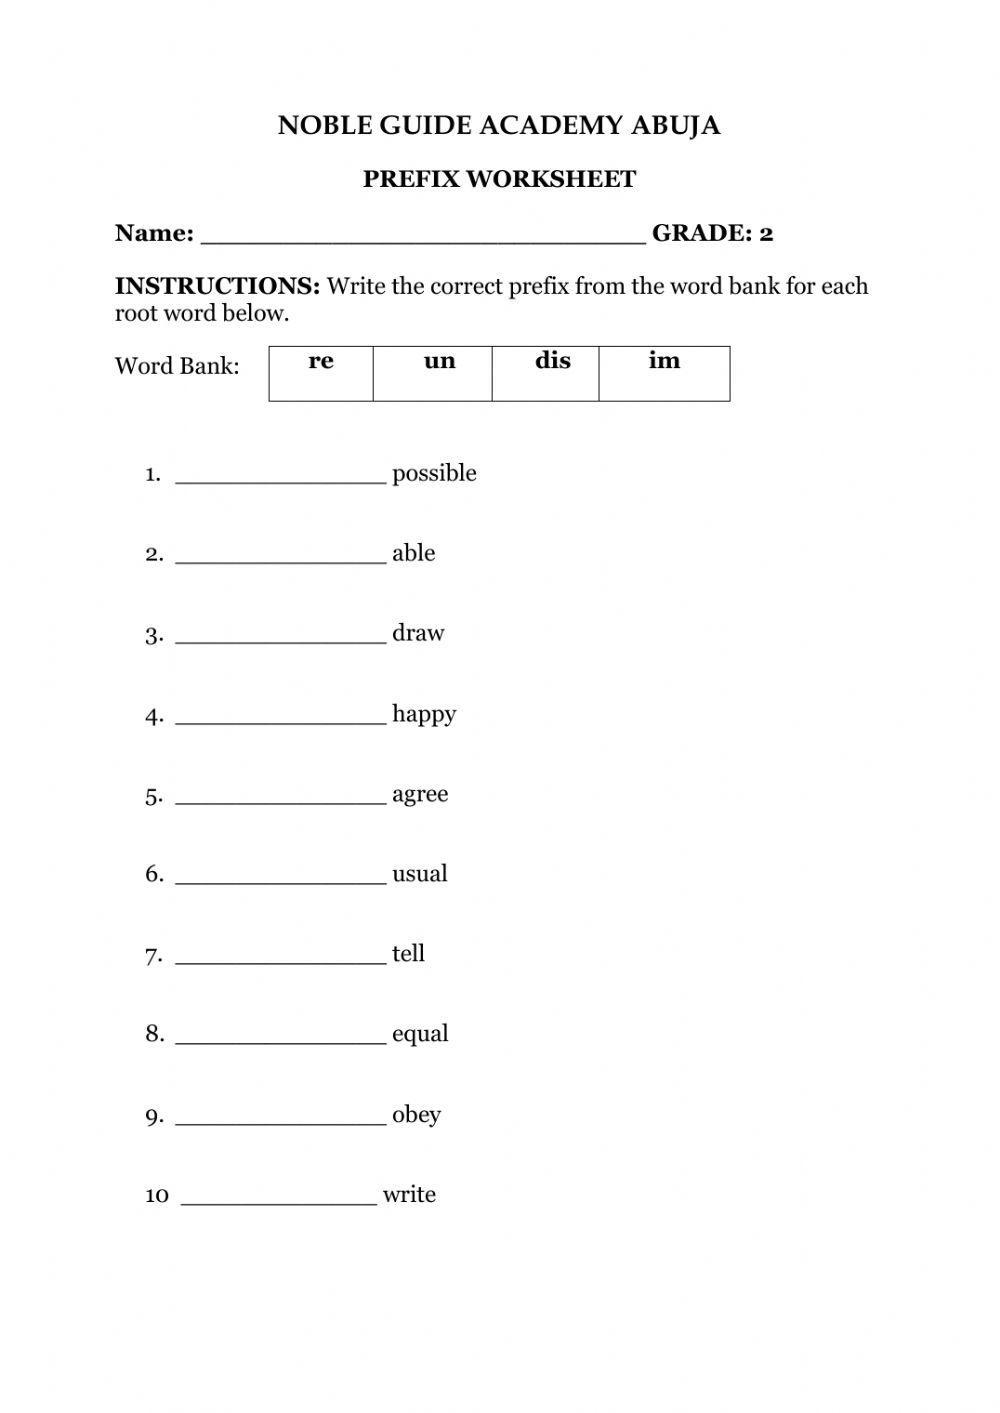 Prefix Worksheet